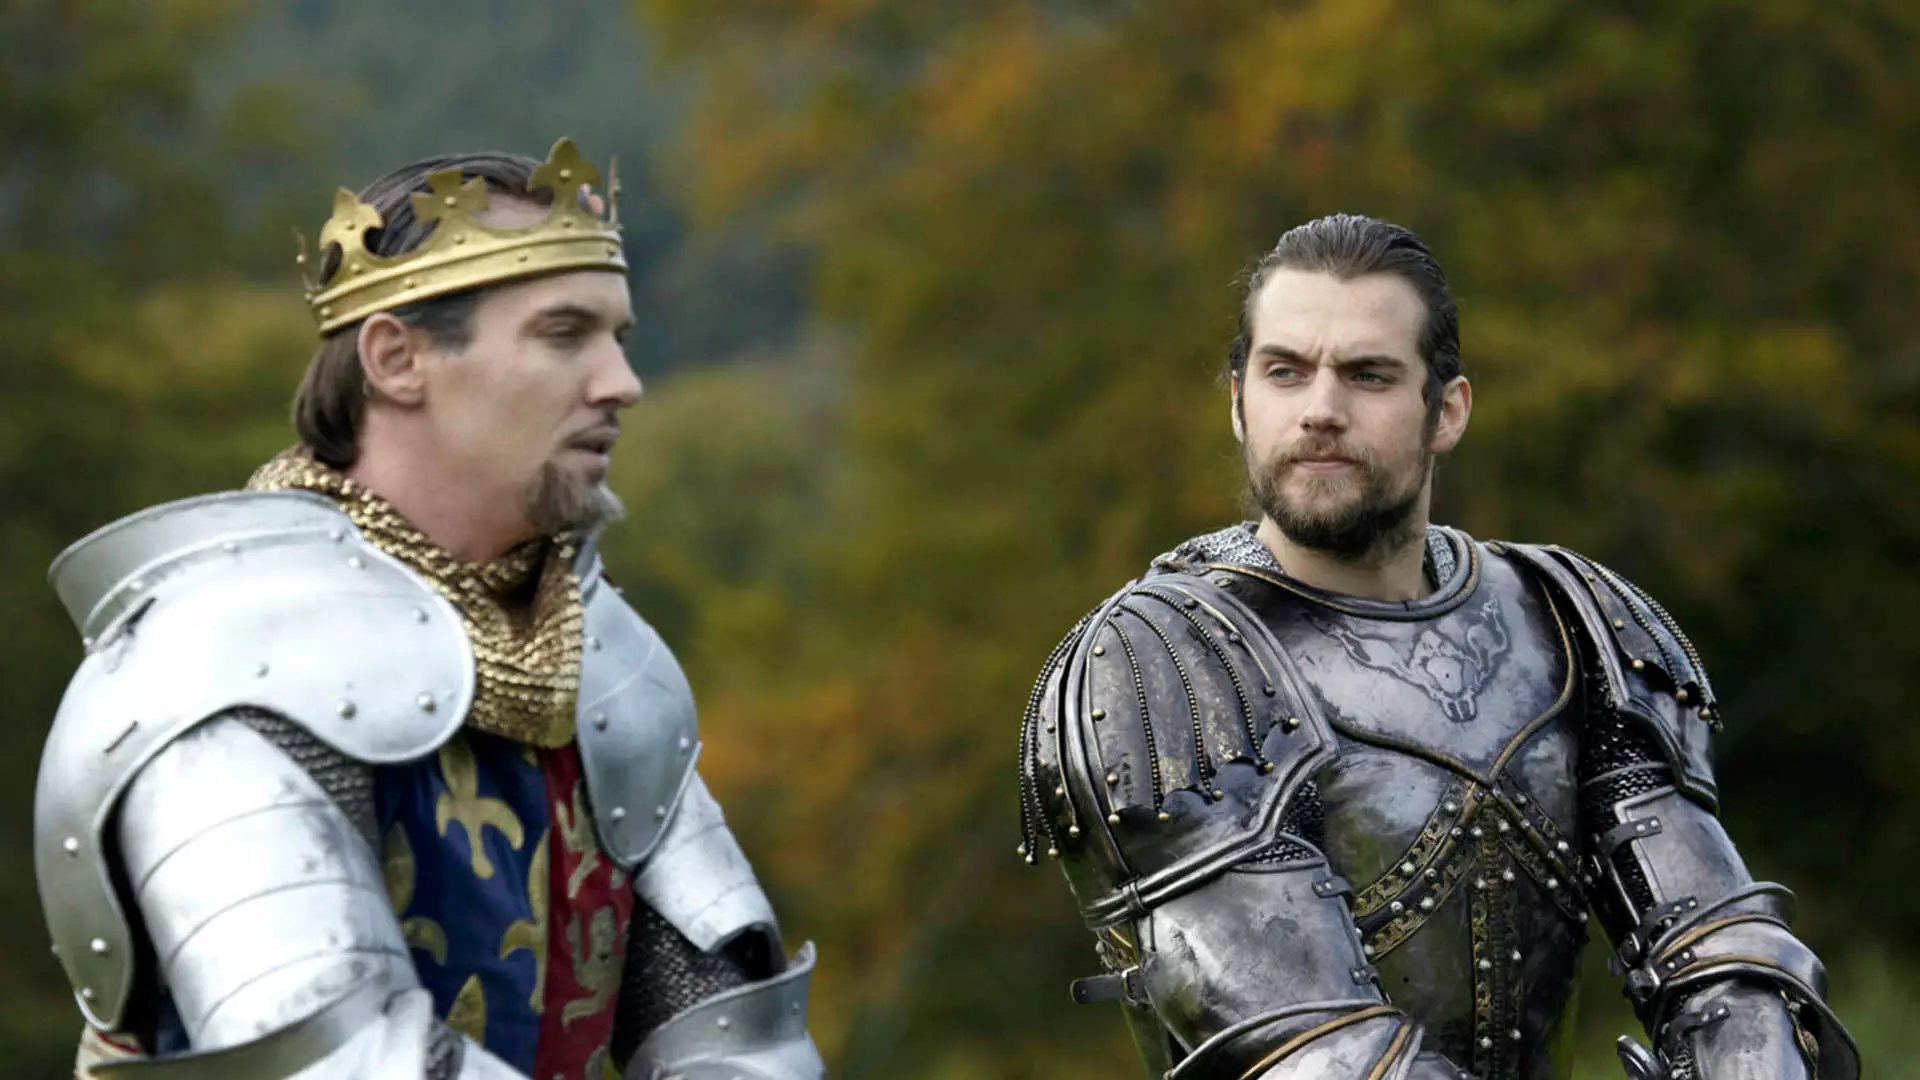 هنری کویل با لباس رزم در کنار پادشاه در سریال The Tudors